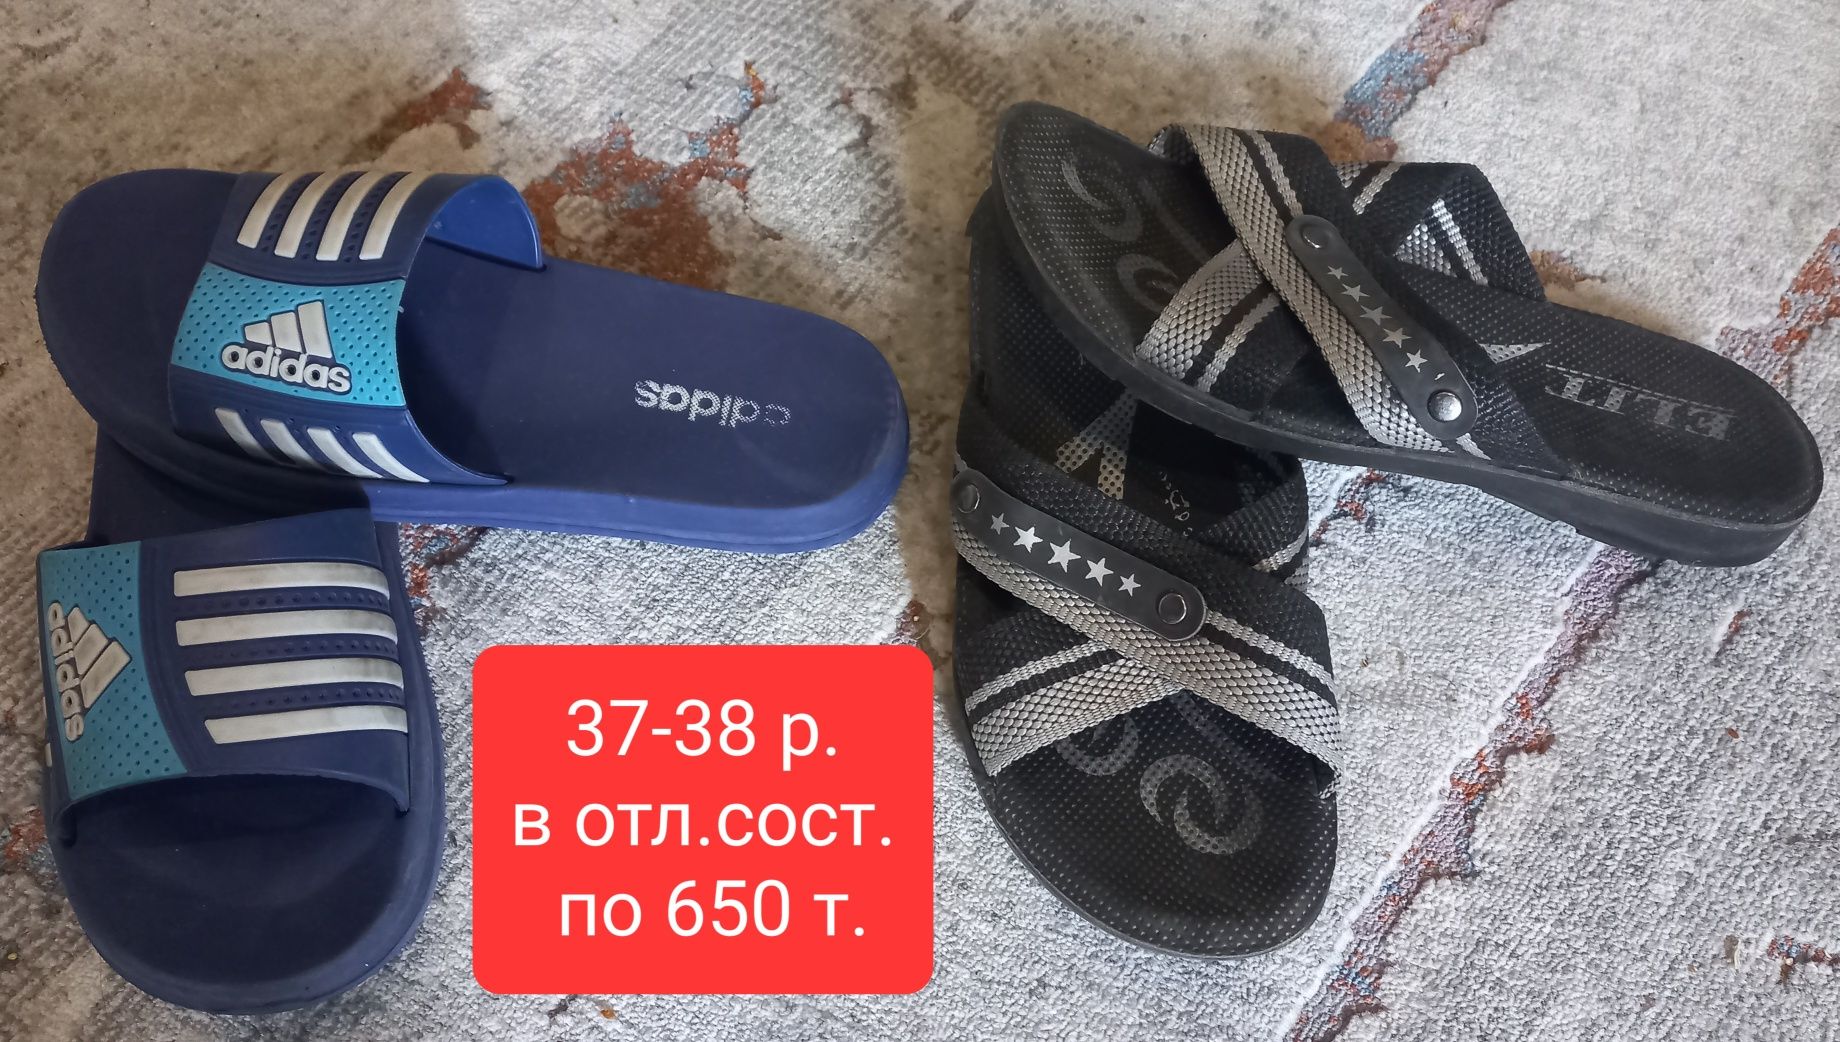 Кроссовки детские 26 р.обувь для мальчика с 26 по38 р.в отличном сост.